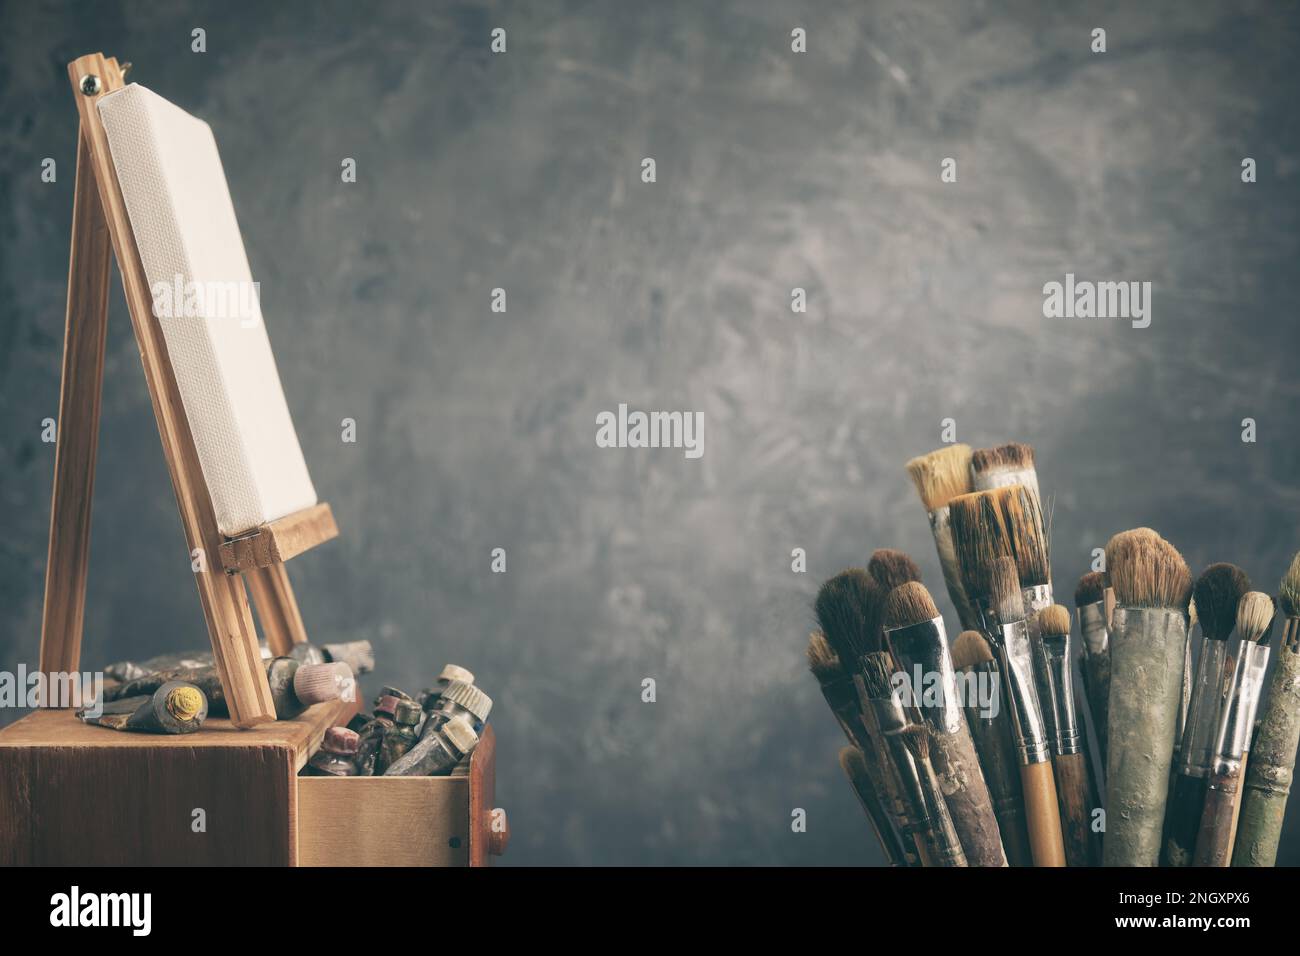 Attrezzatura artistica in studio: Tela d'artista su cavalletto in legno, tubi e pennelli - pennelli artistici usati per dipingere con Foto Stock